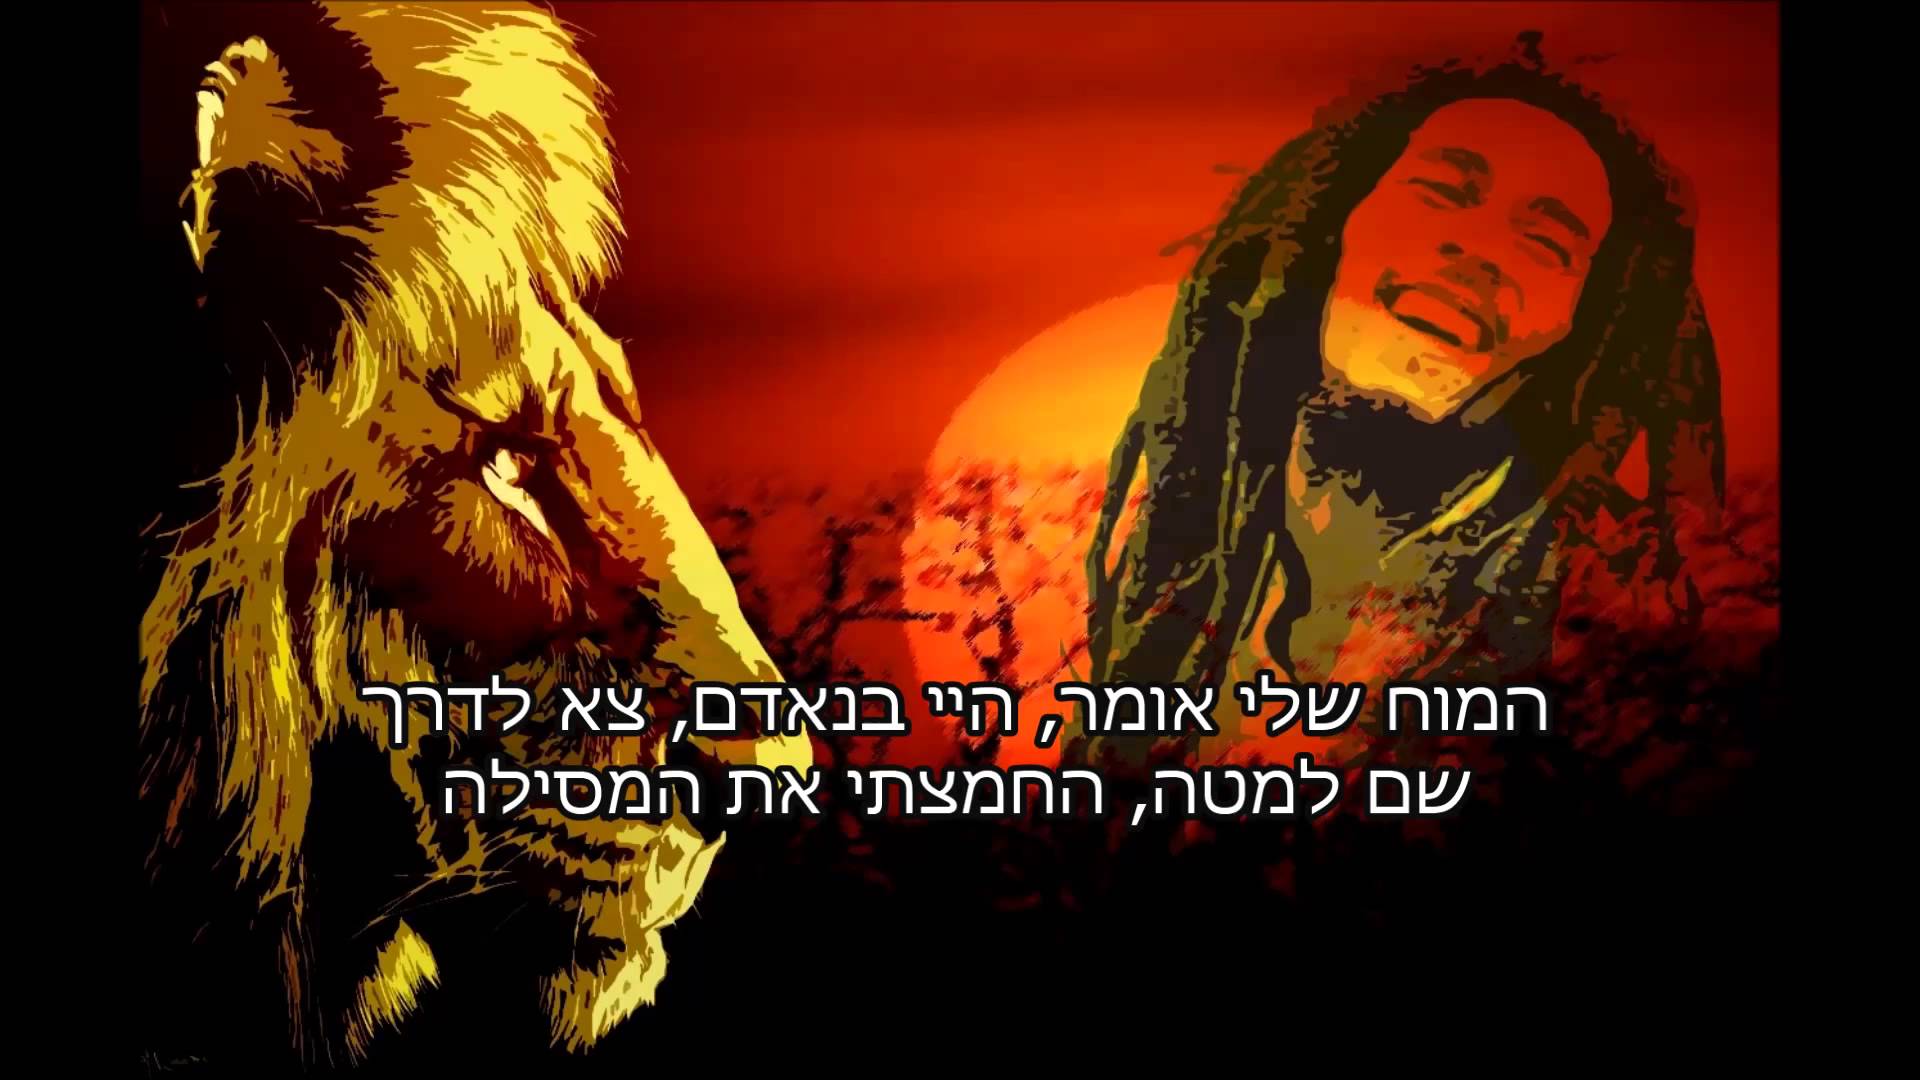 Bob Marley Medley בוב מארלי - מחרוזת אקוסטית מתורגם